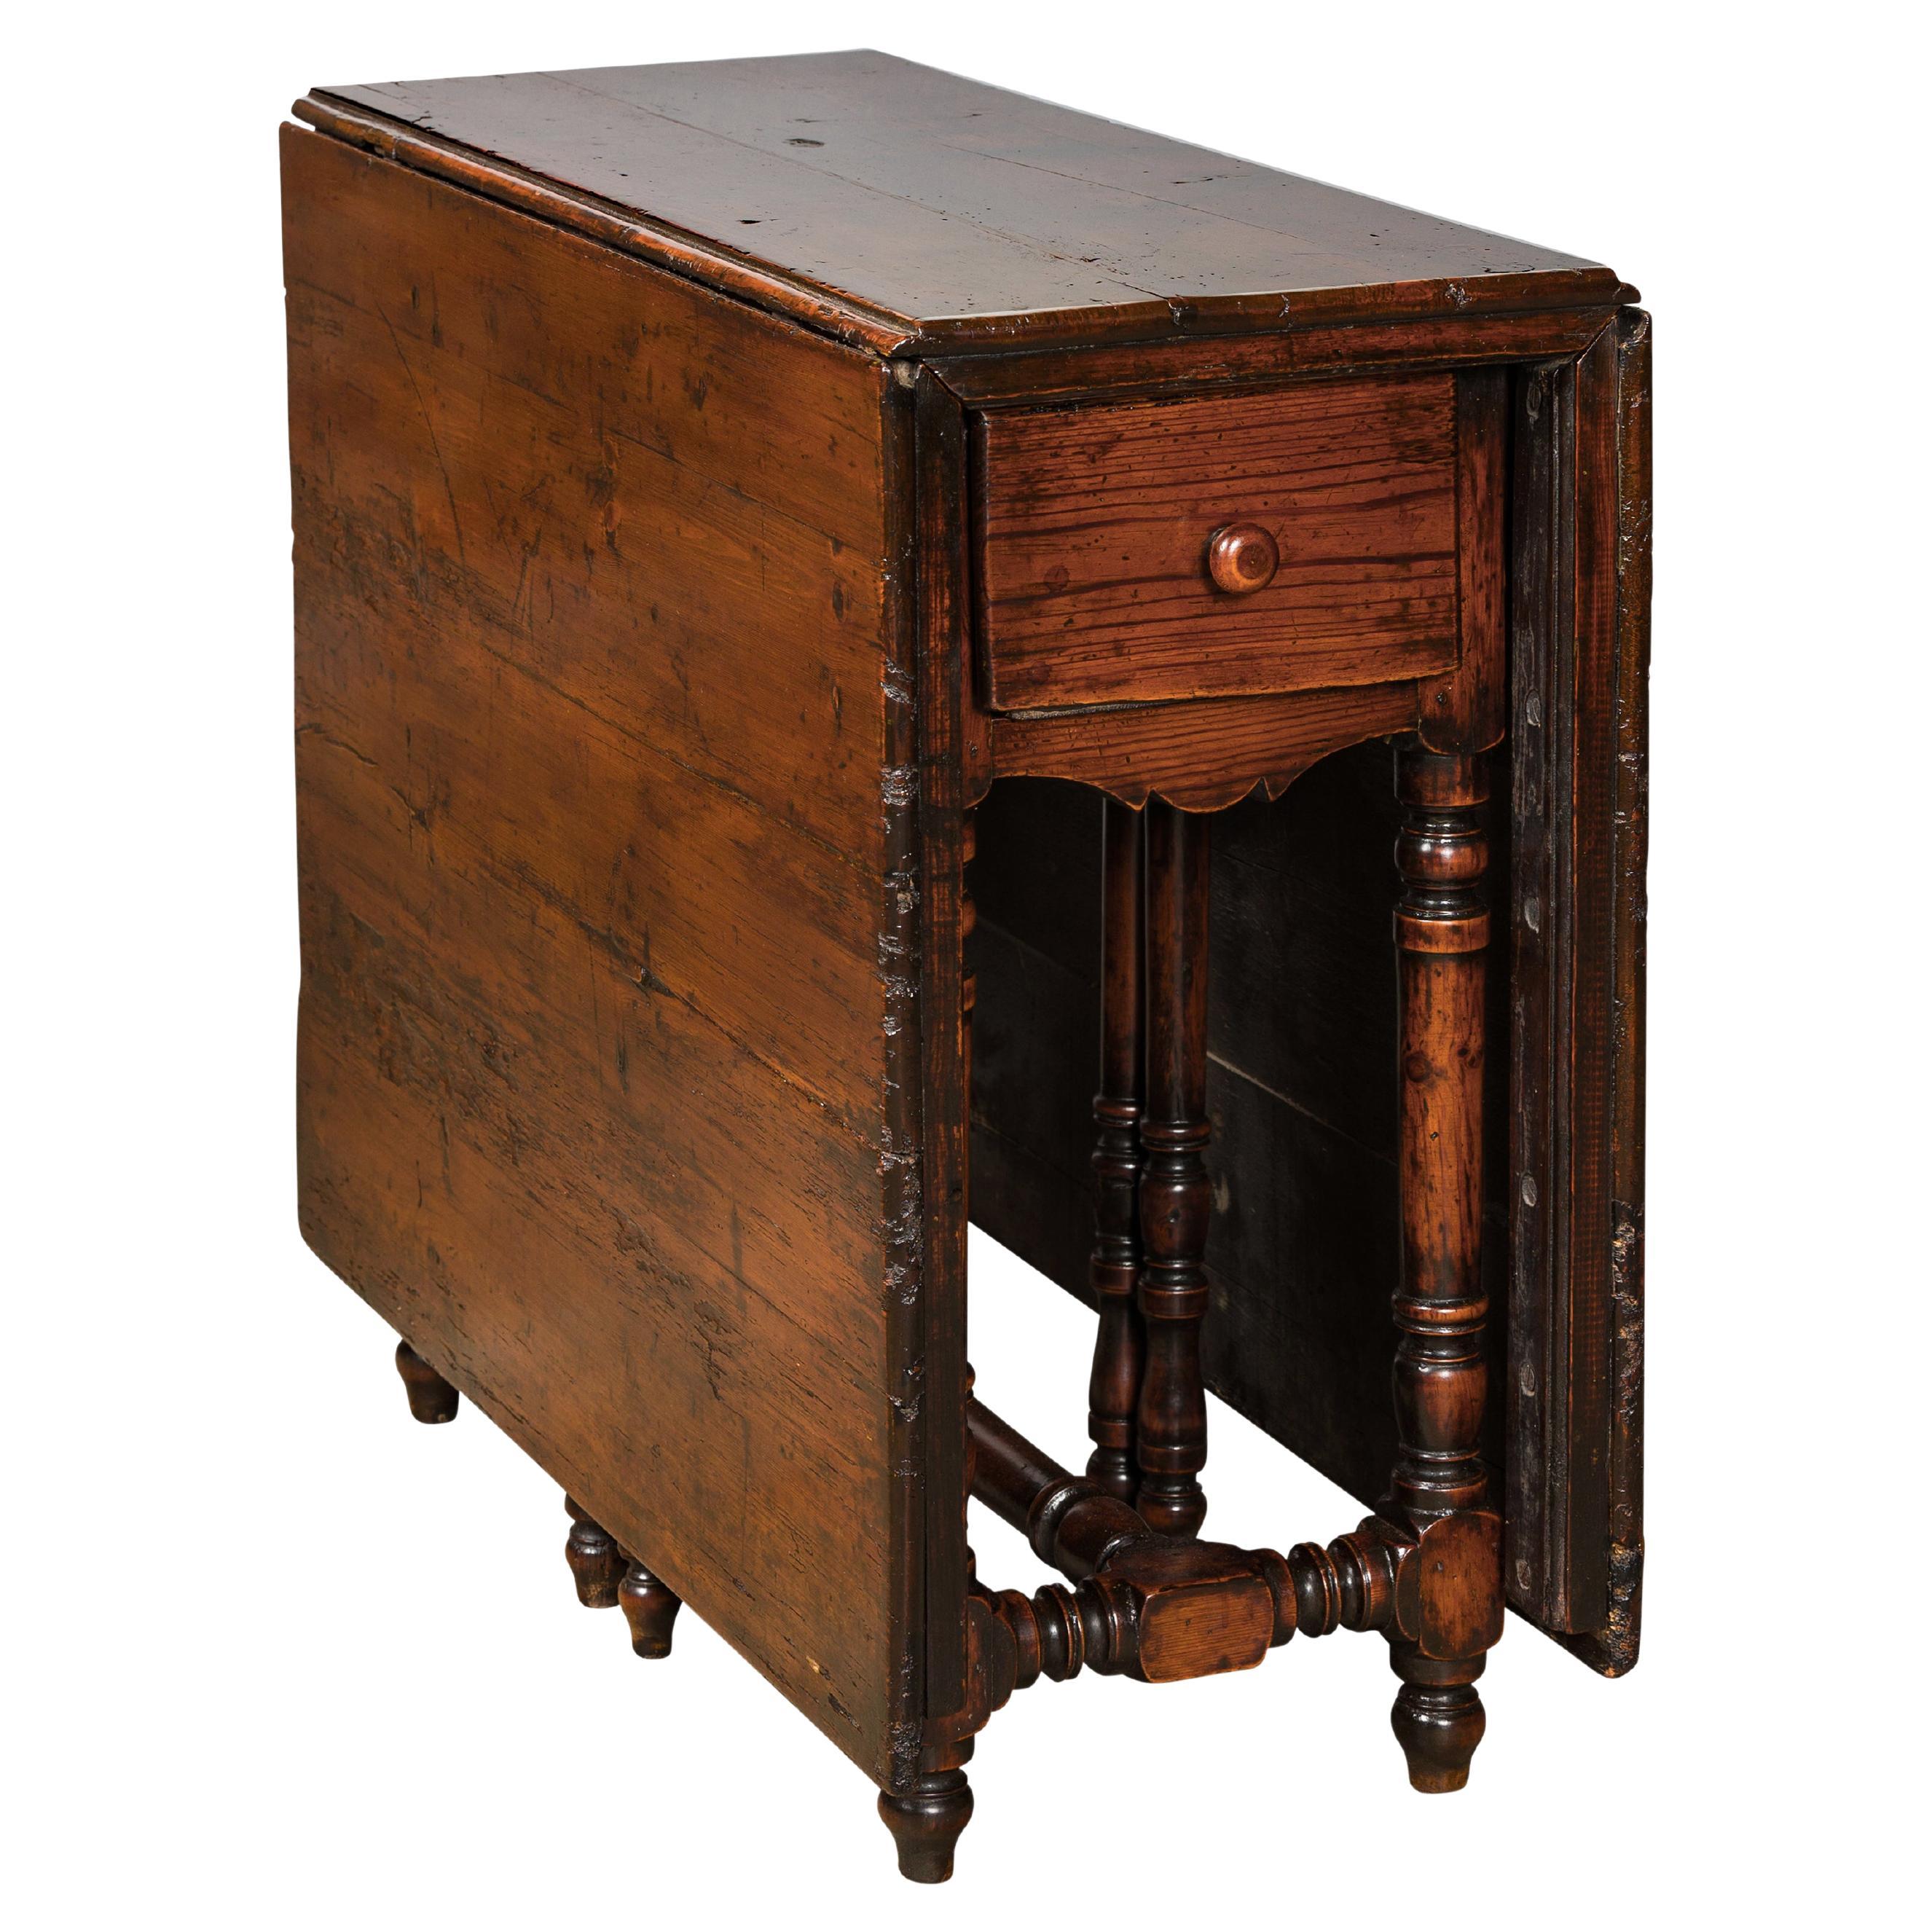 Englischer klappbarer Eichenholztisch aus dem 19. Jahrhundert mit gedrechselten Beinen und zwei Schubladen